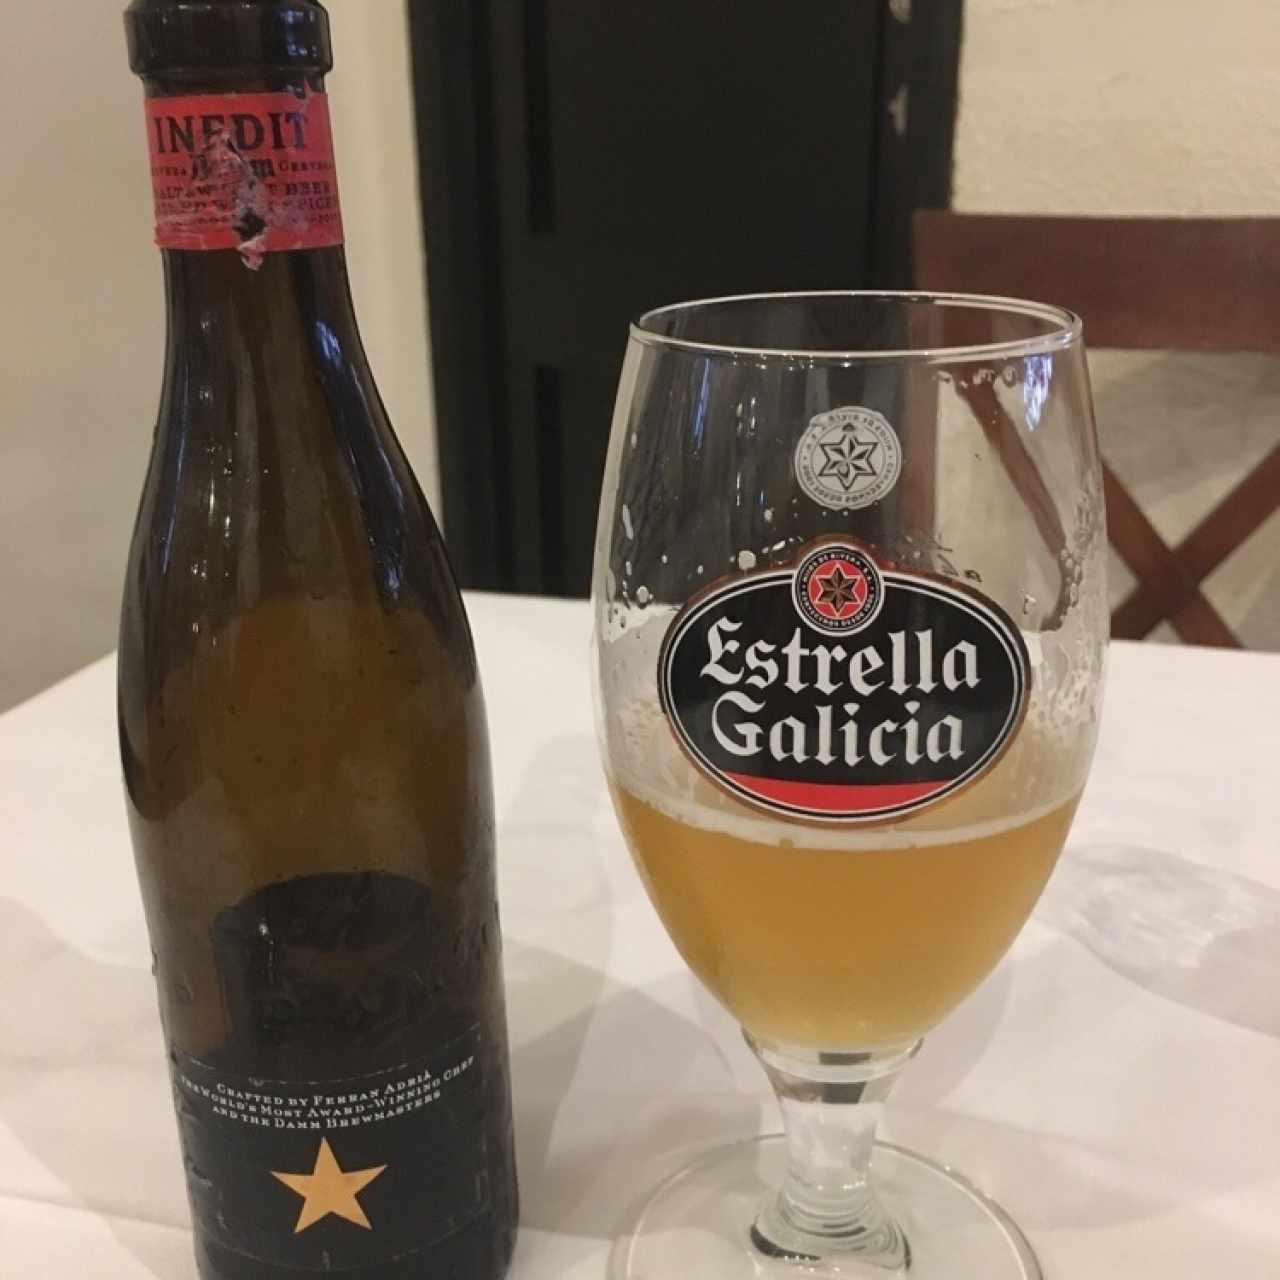 Cerveza Inedit del mitico chef Ferran Adriá